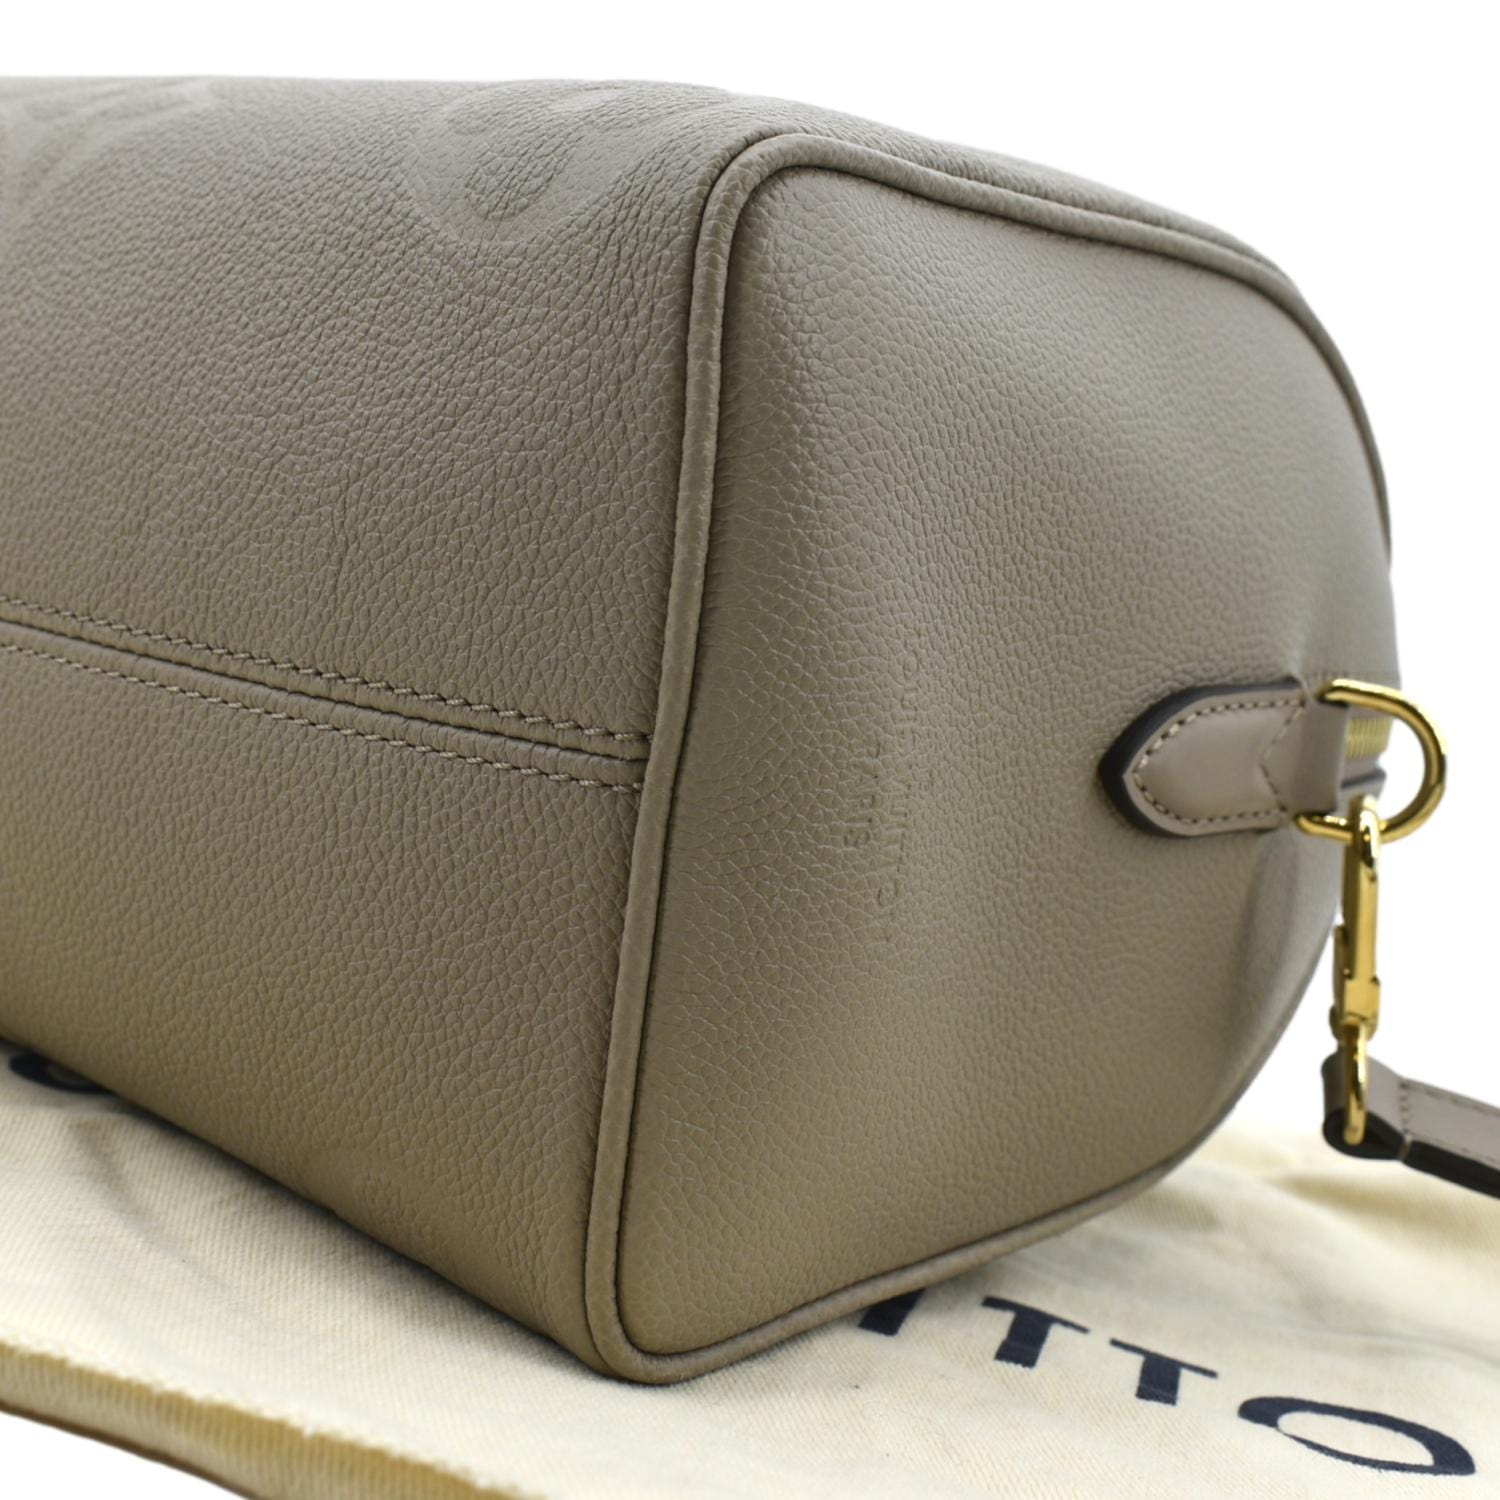 Louis Vuitton Speedy Bandoulière 25 Monogram Empreinte Leather - Women -  Handbags M46136 Cognac - $2,981.00 